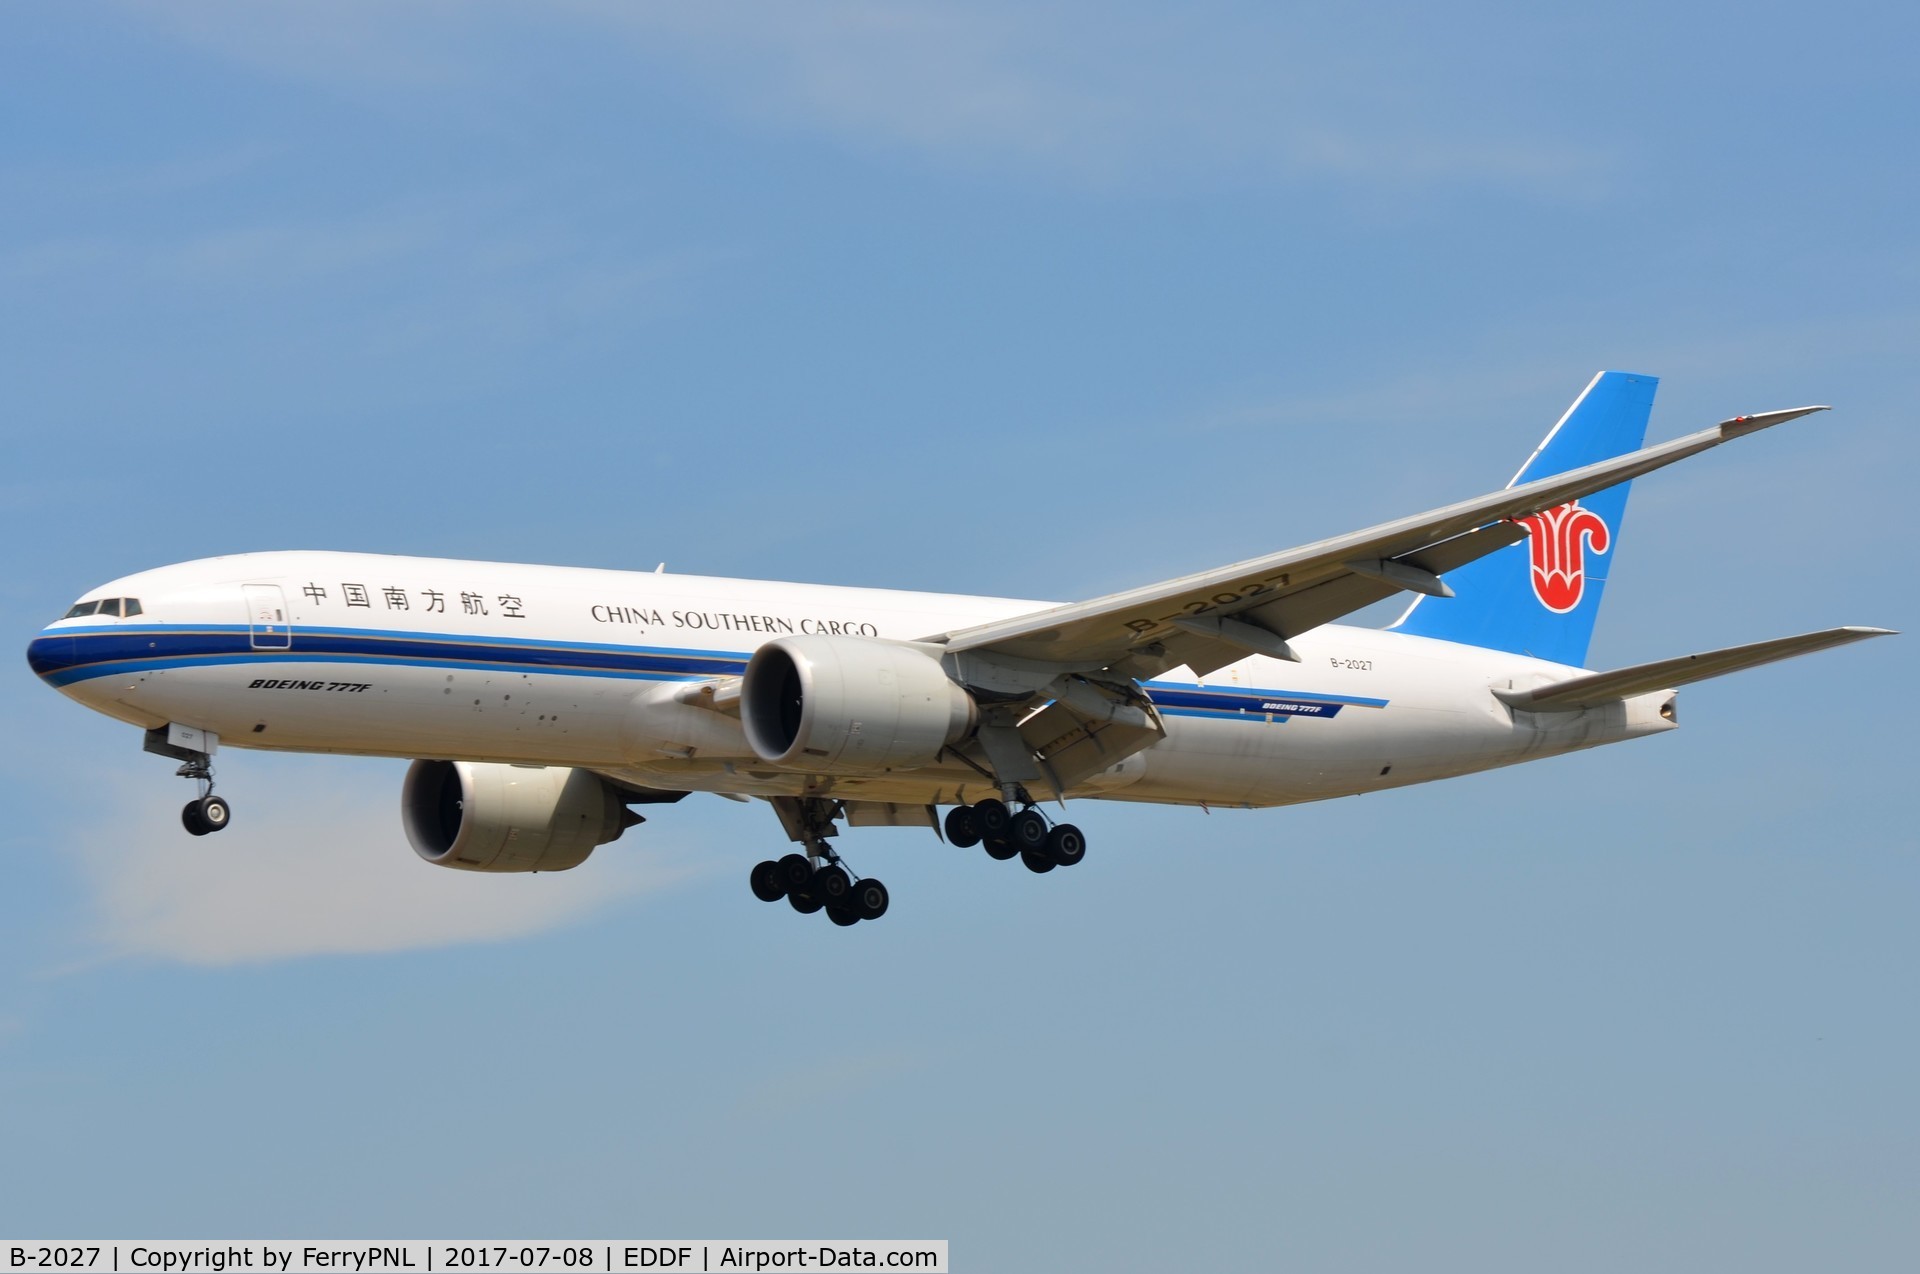 B-2027, 2015 Boeing 777-F1B C/N 41636, China Southern B772F landing